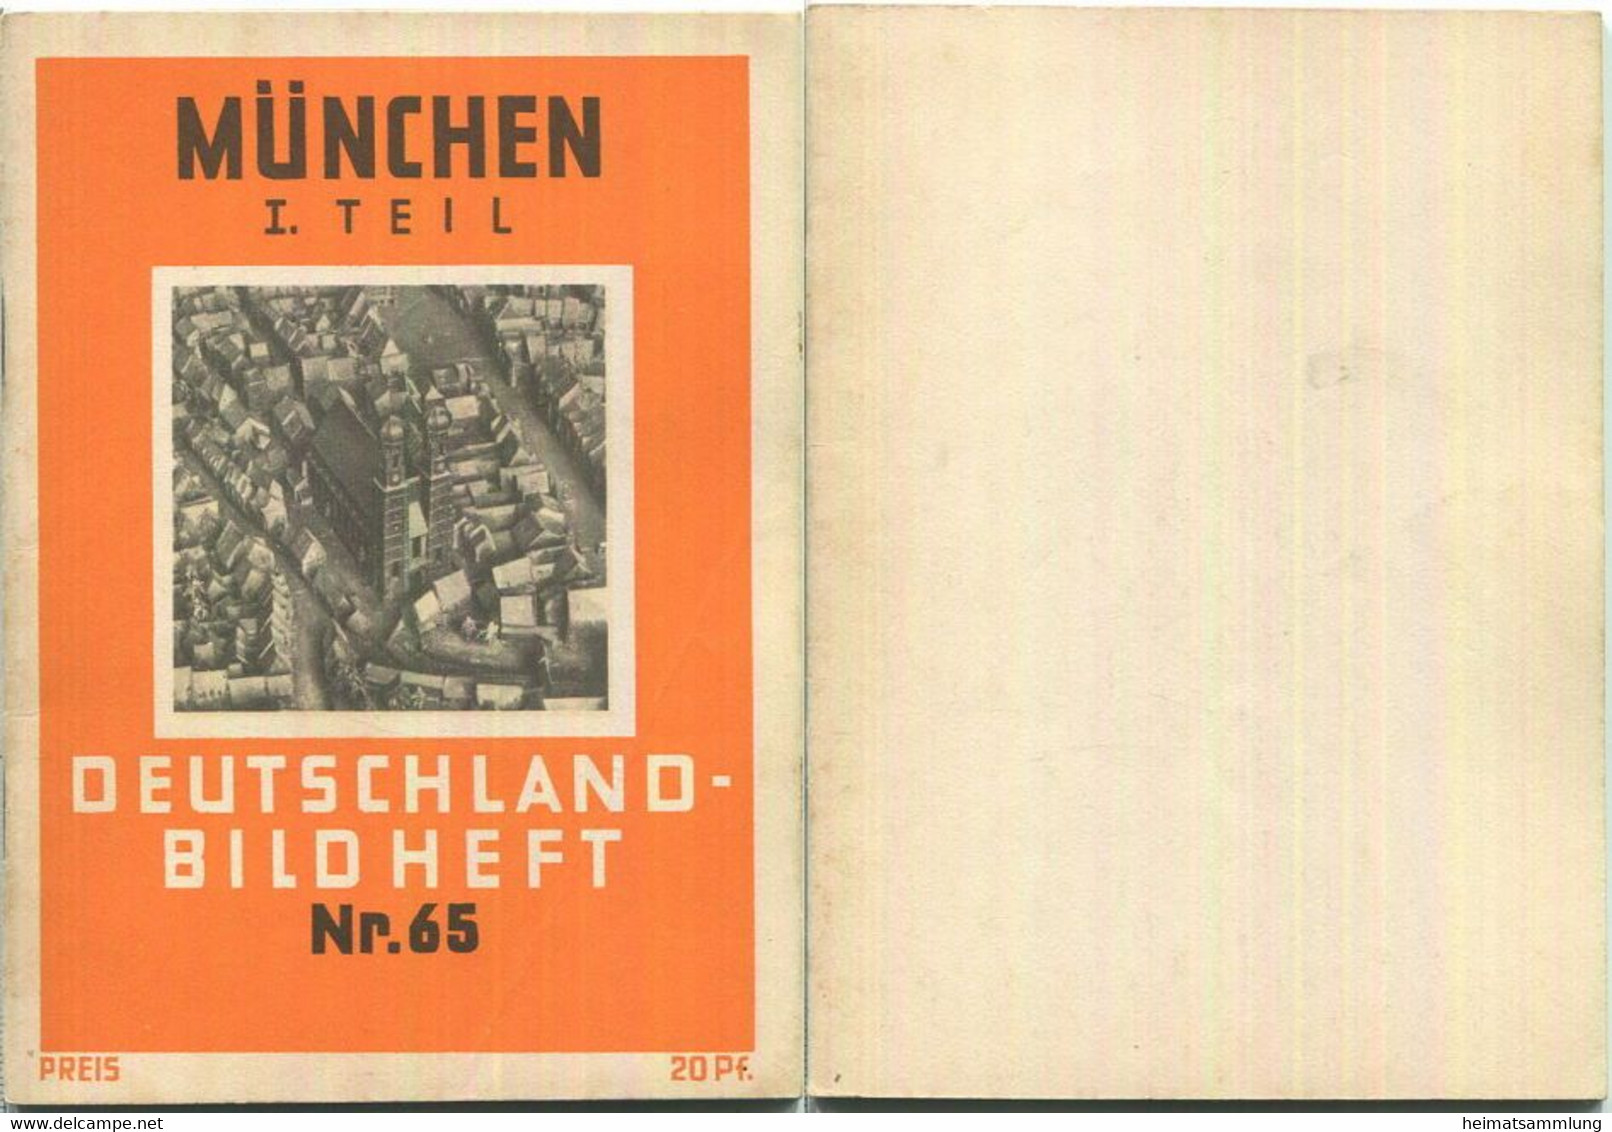 Nr. 65 Deutschland-Bildheft - München Teil I - München